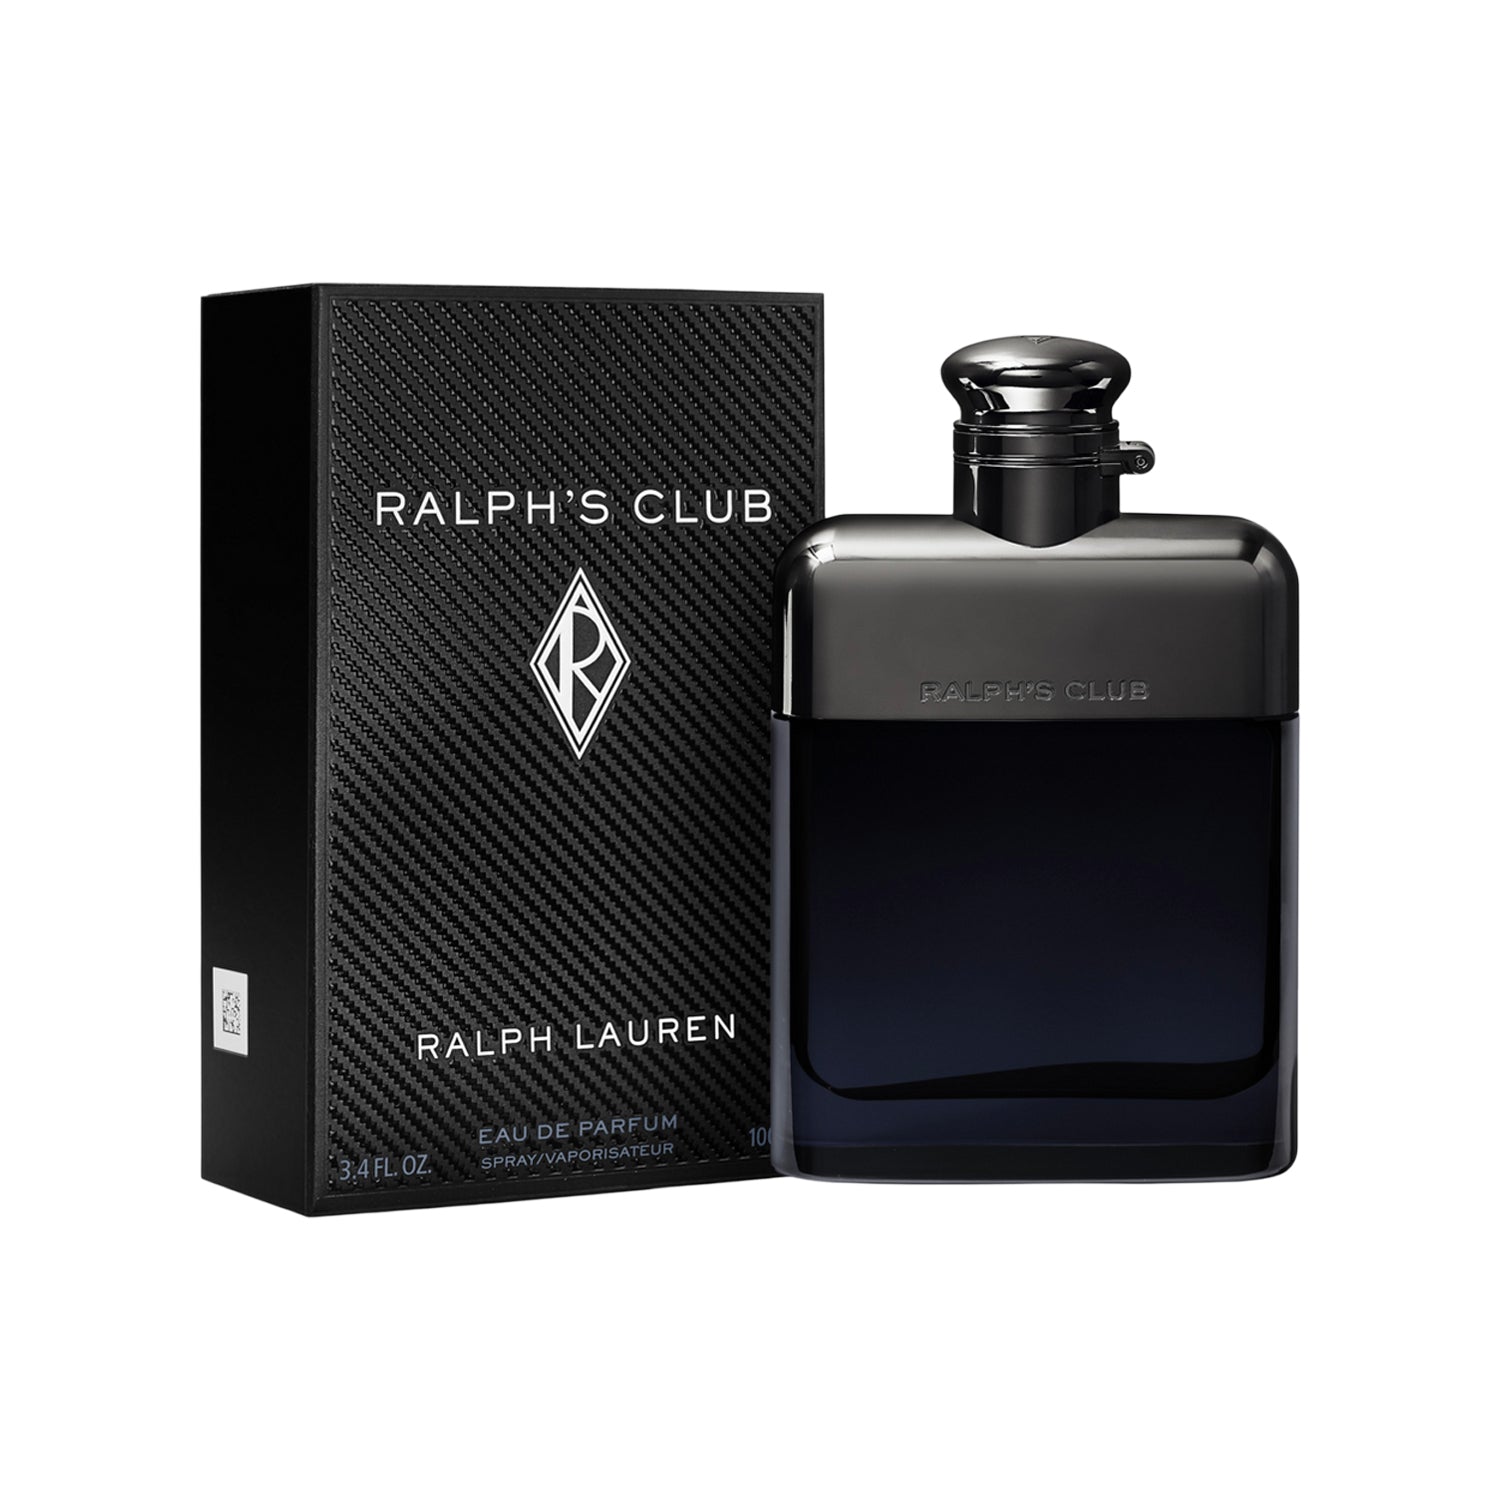 Ralph's Club Eau de Parfum Spray for Men by Ralph Lauren, Product image 1